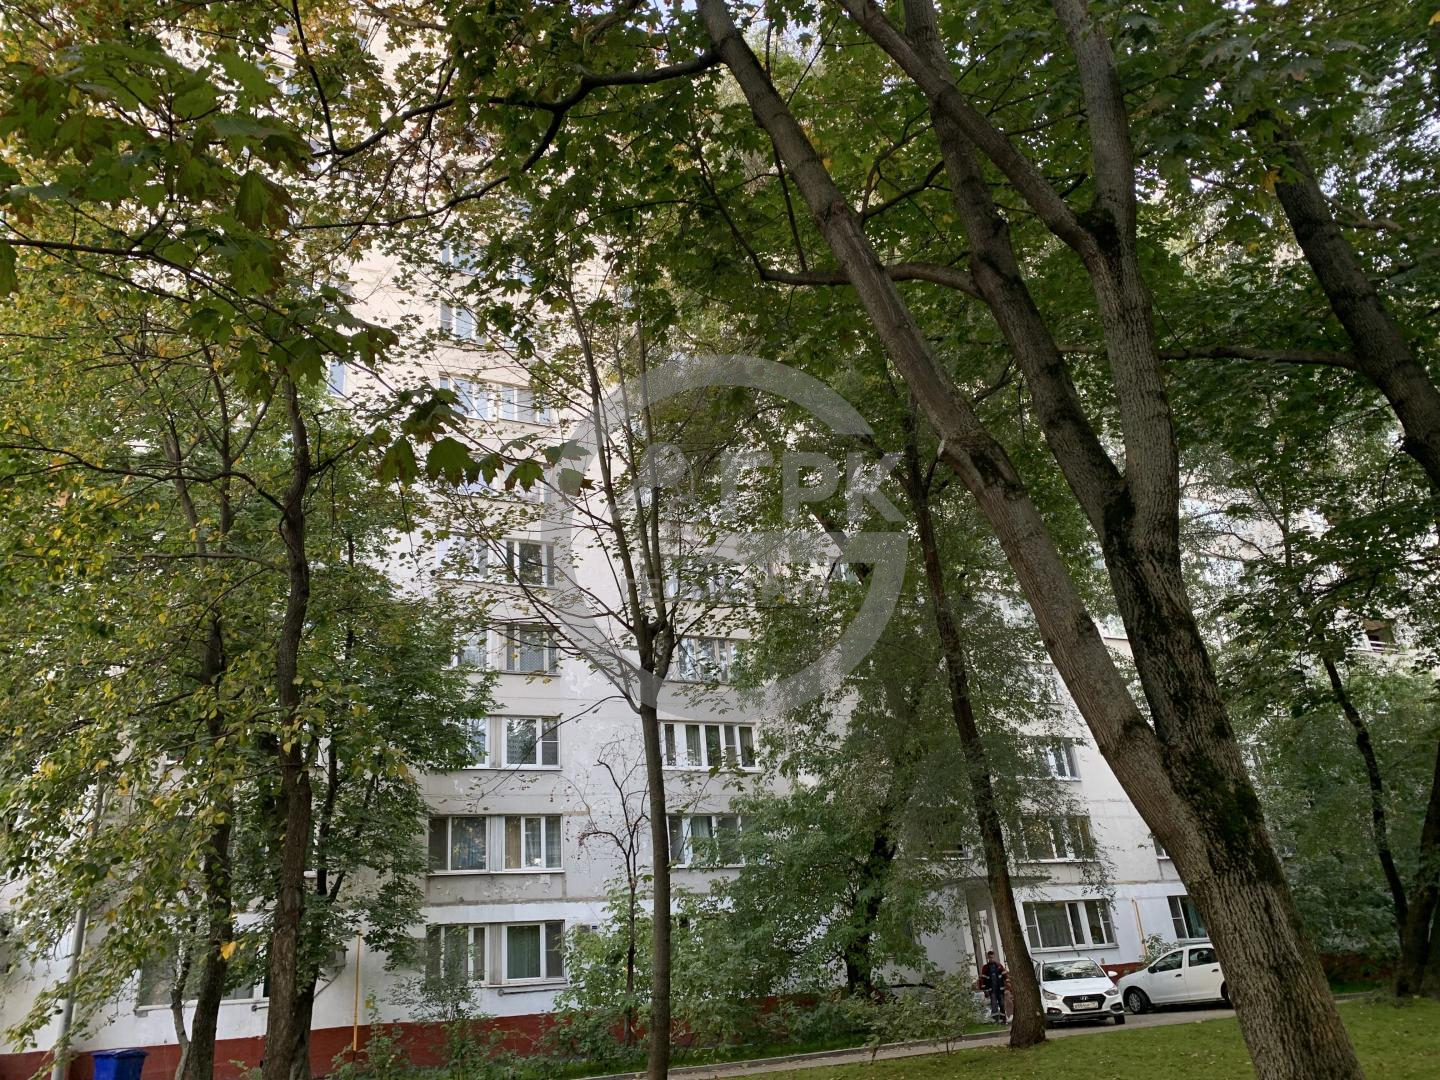 Продам квартиру в Москве по адресу Библиотечная улица, 6, площадь 112 квм Недвижимость Москва (Россия) Продается большая уютная 4х комнатная квартира 112 м2 , легко перестраивается в квартиру с большой кухней -столовой почти 20м2